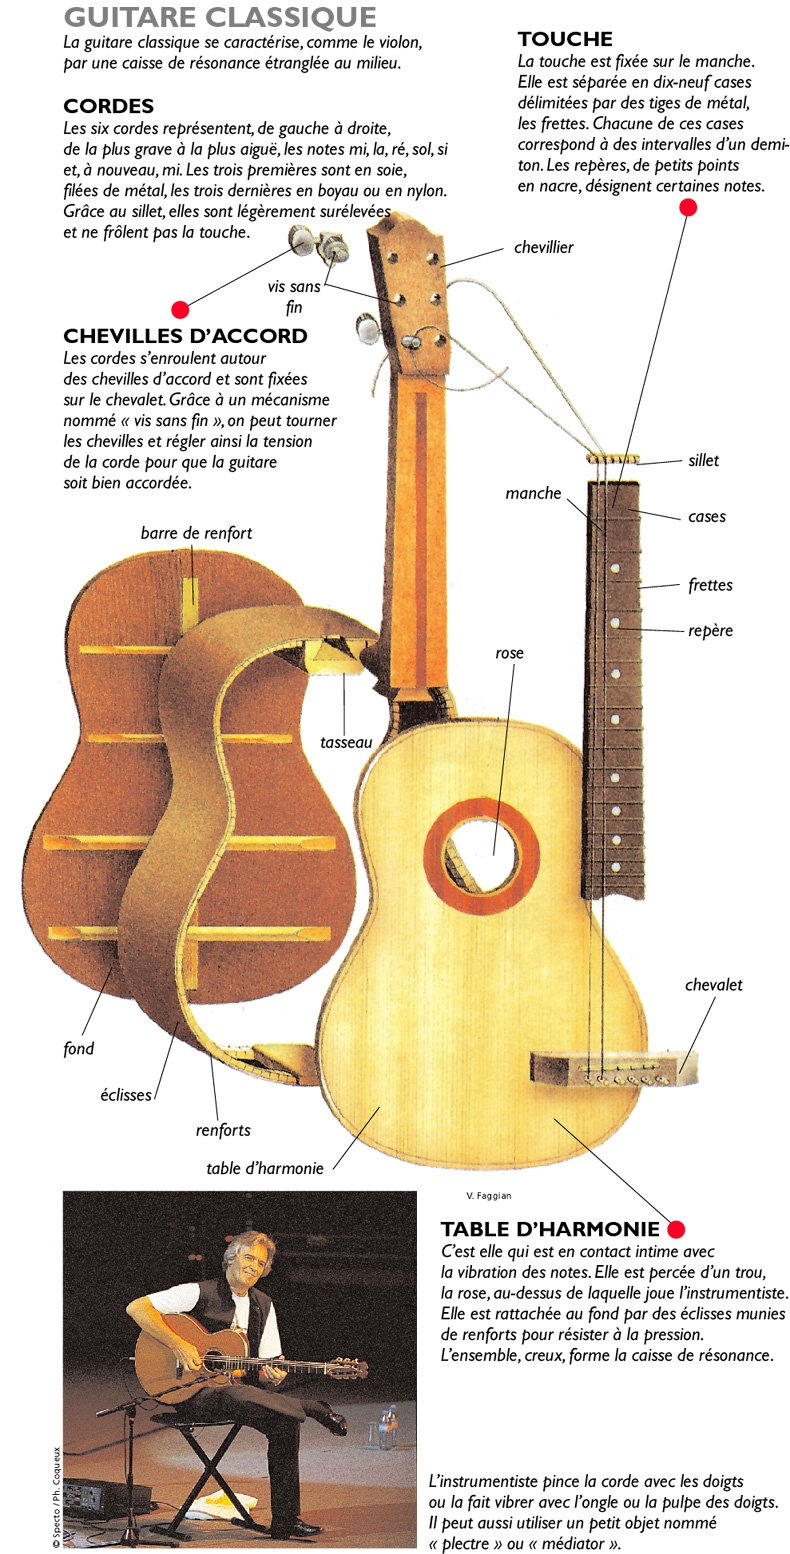 La guitare slide : tout savoir sur cette technique - Unizic